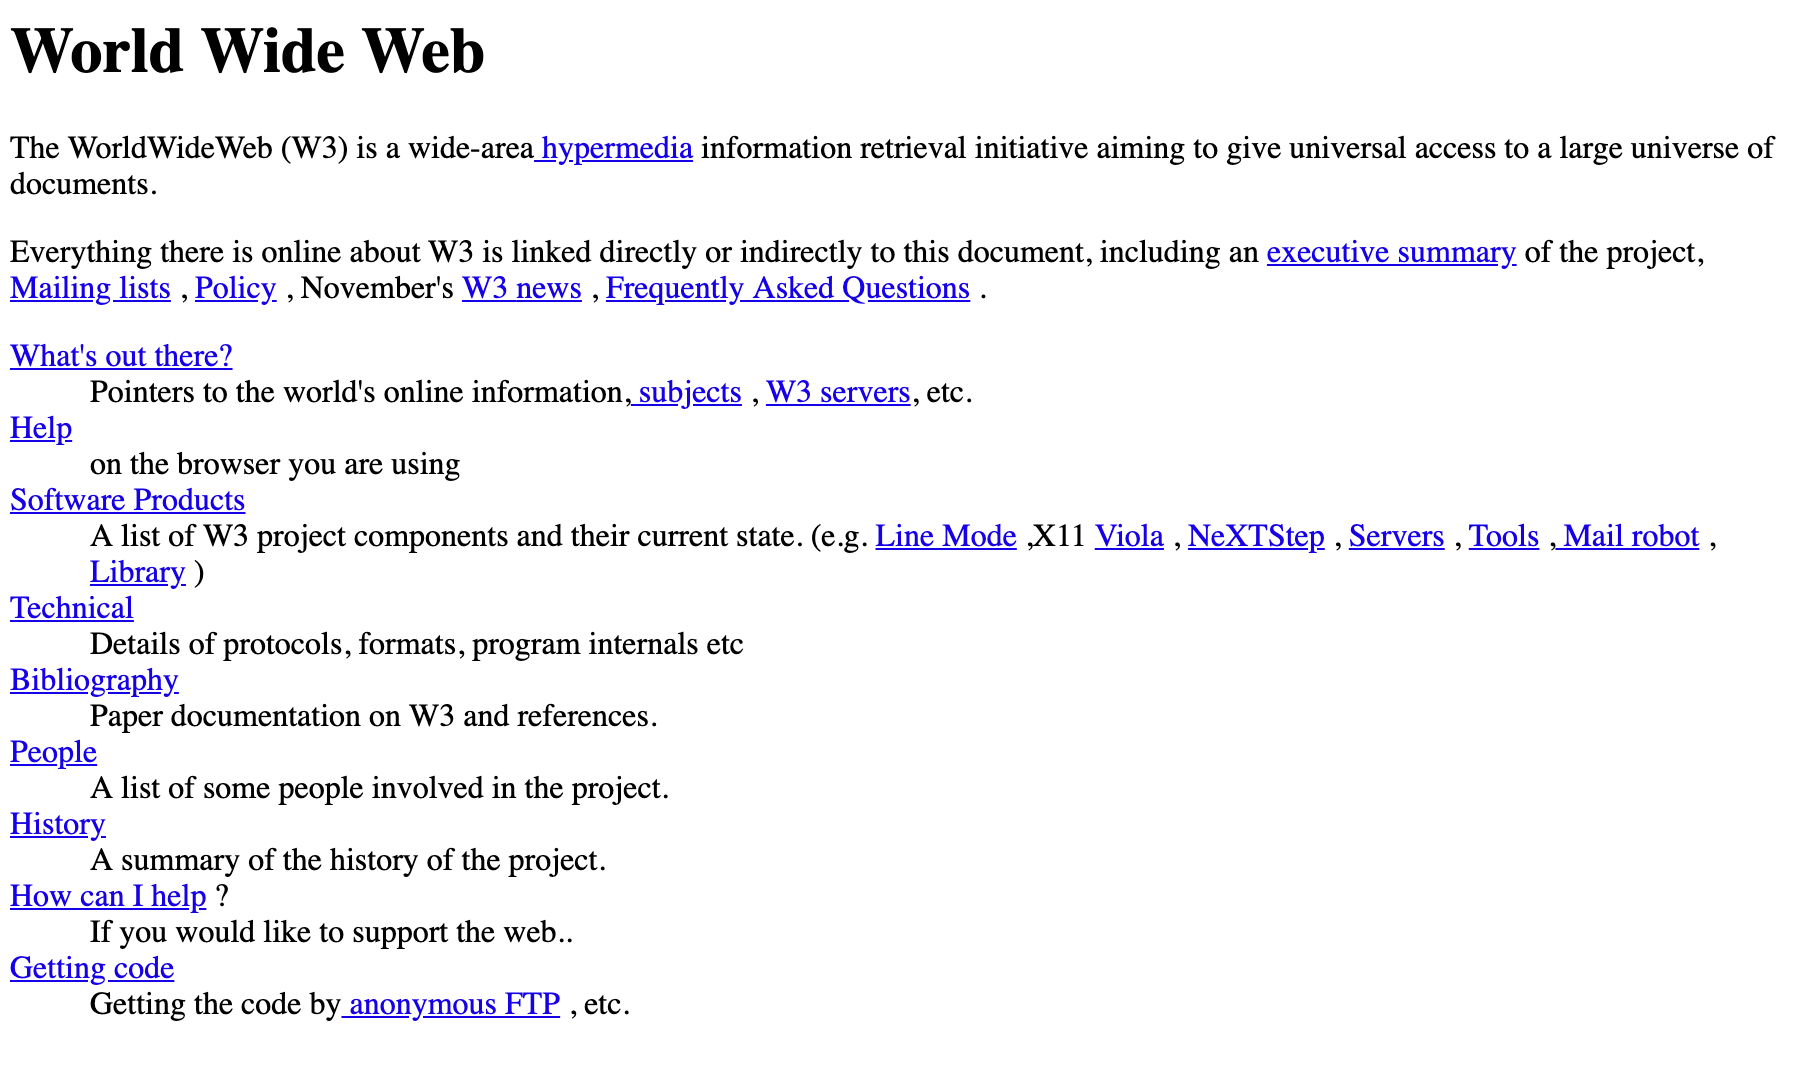 Изображение первого веб-сайта в Интернете, созданного в 1991 году.